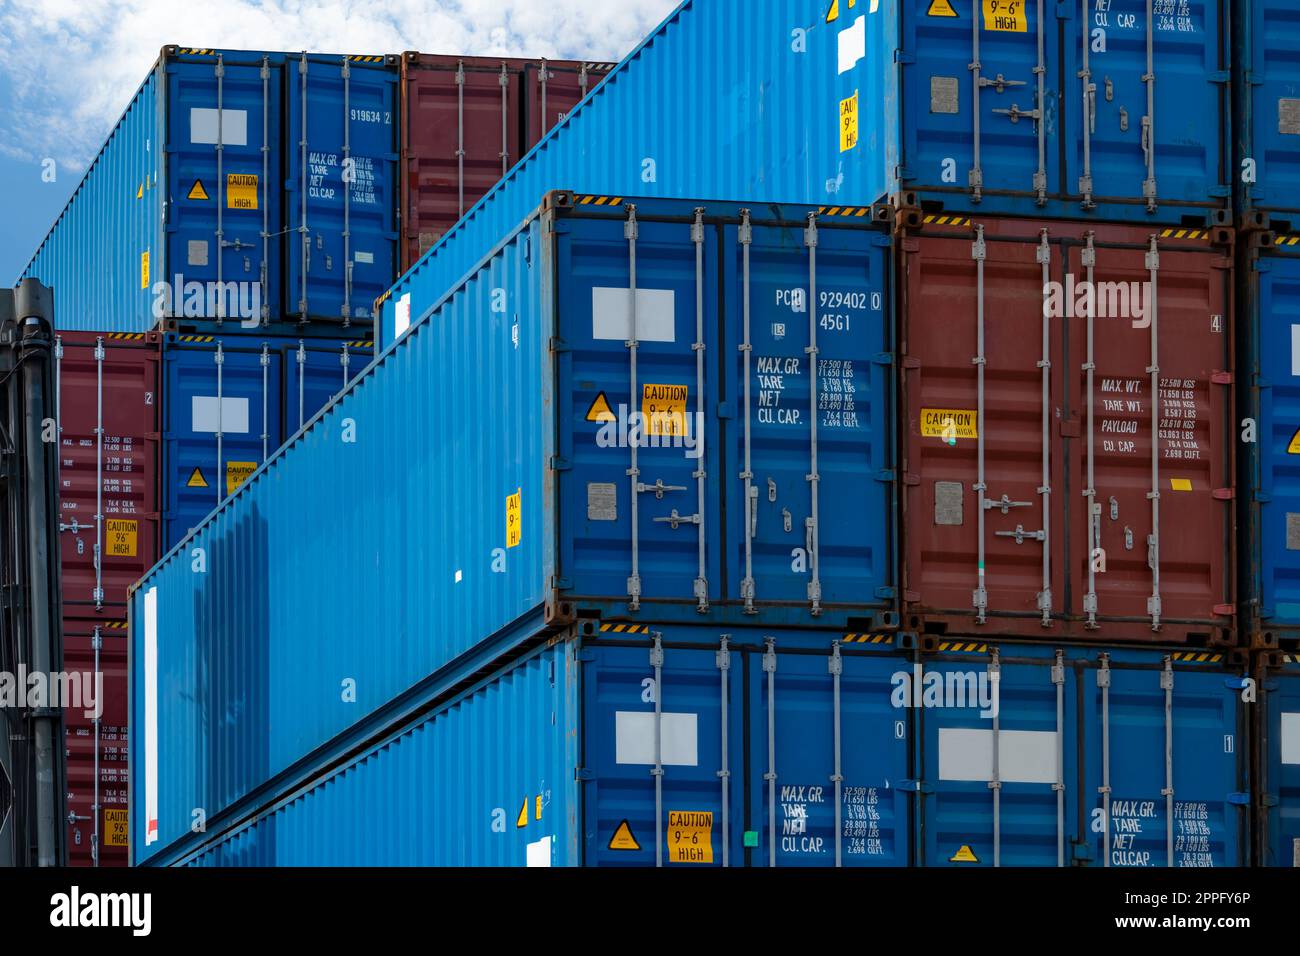 Blauer und roter Logistikcontainer für Nahaufnahmen. Fracht- und Schifffahrtsunternehmen. Containerversand für Import- und Exportlogistik. Logistikbranche. Container für Lkw-Transport. Frachttransportkonzept. Stockfoto